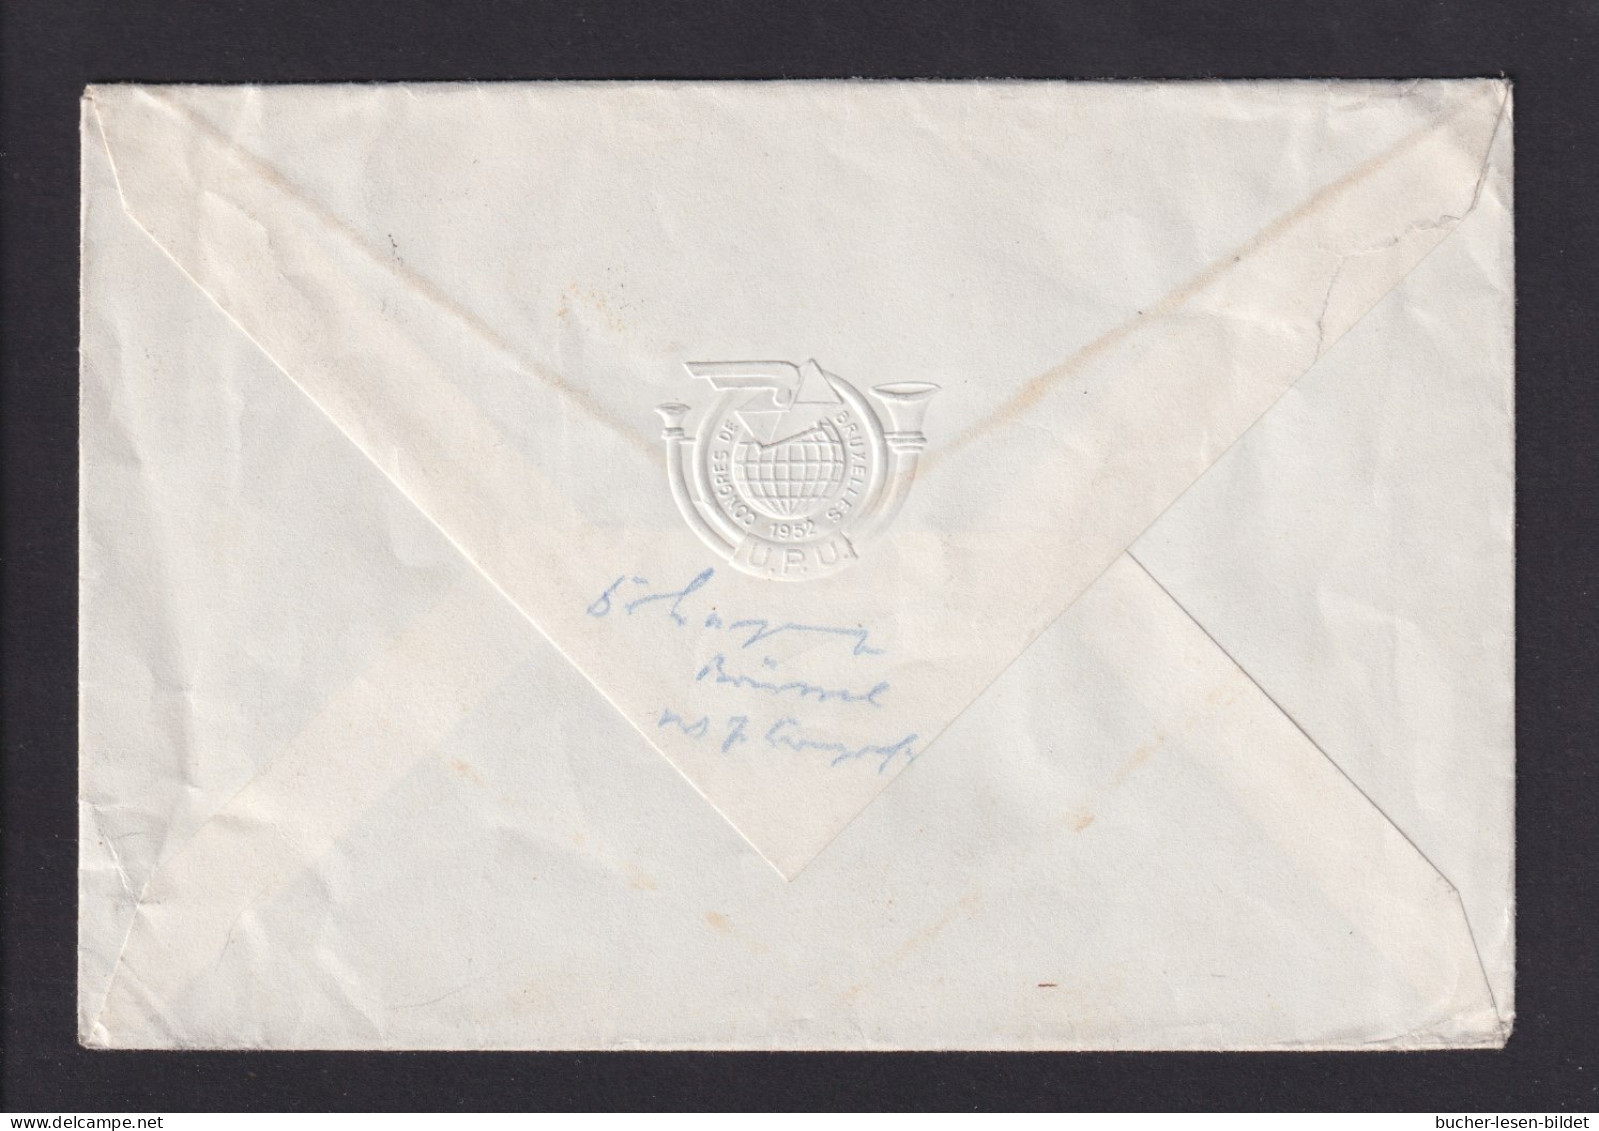 1952 - UPU-Kongress Brüssel - Delegiertenbrief Mit Sonderstempel Und Passender Frankatur - UPU (Union Postale Universelle)